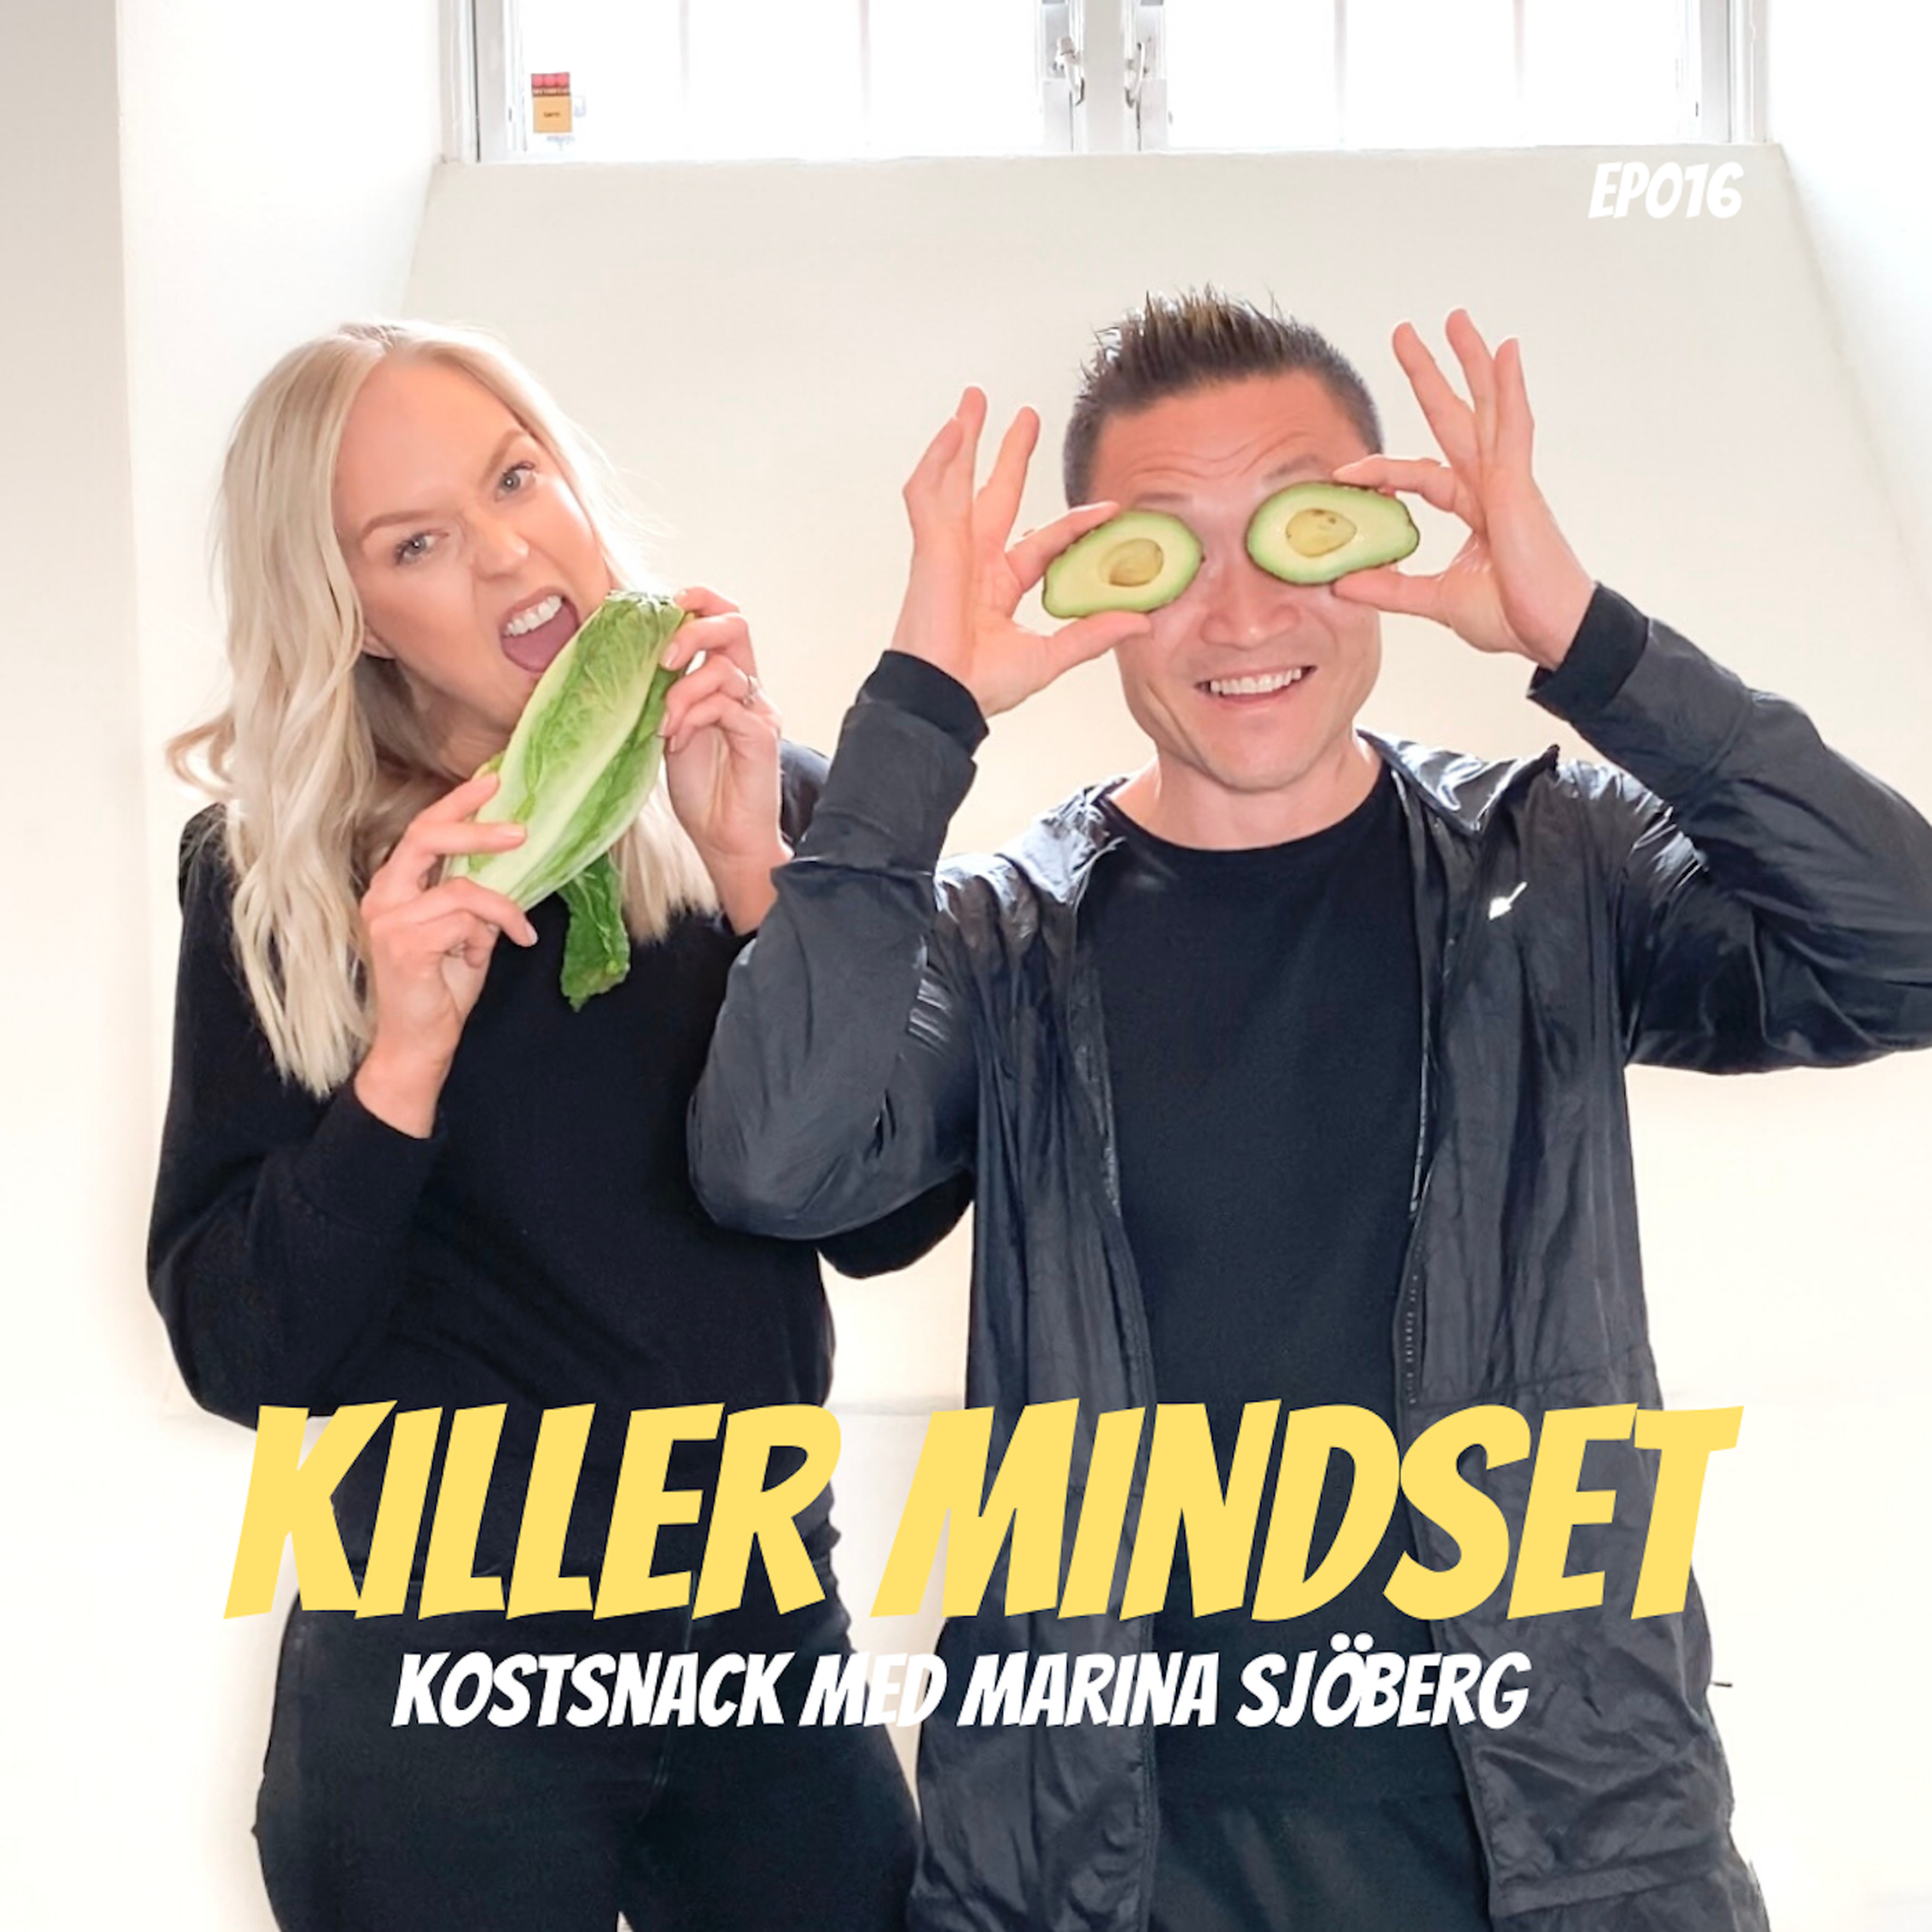 Episod 16 - Kostsnack med Marina Sjöberg